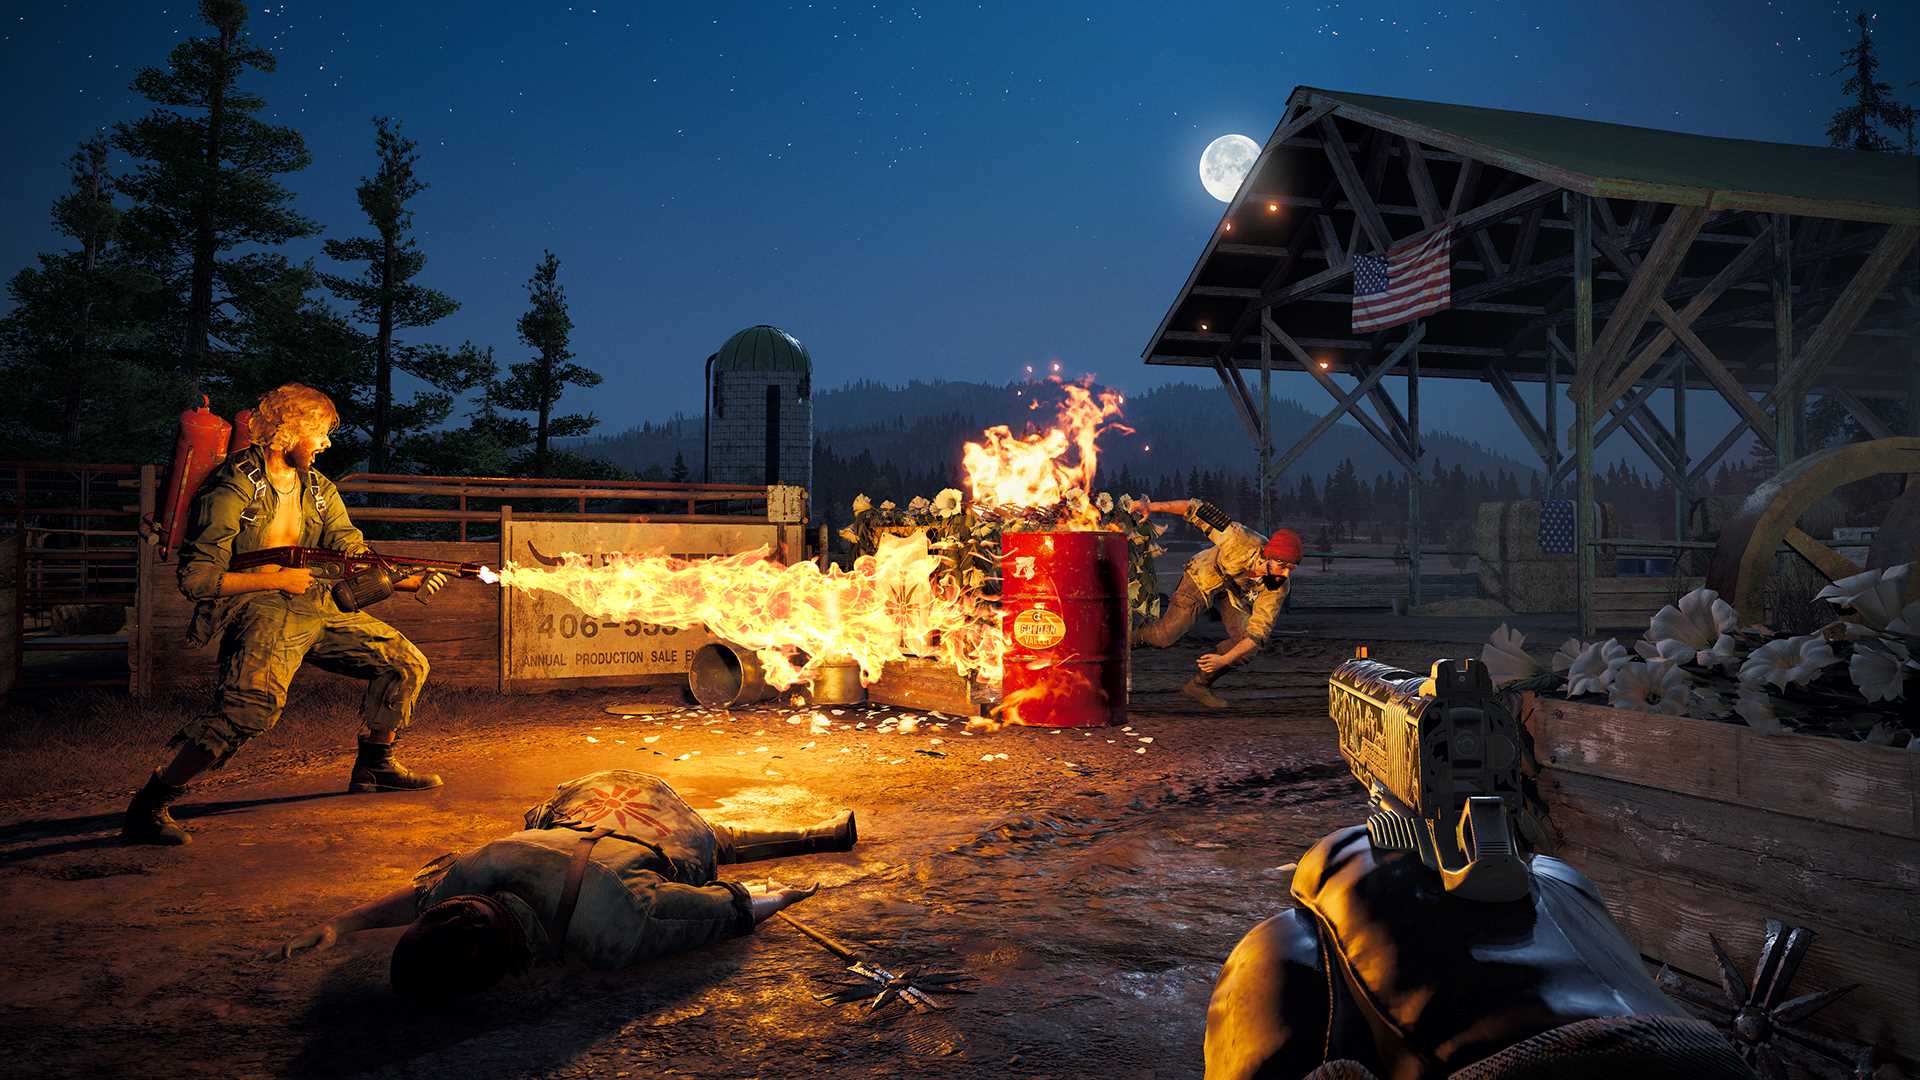 Far Cry 5 estará de graça em todas plataformas a partir do dia 5